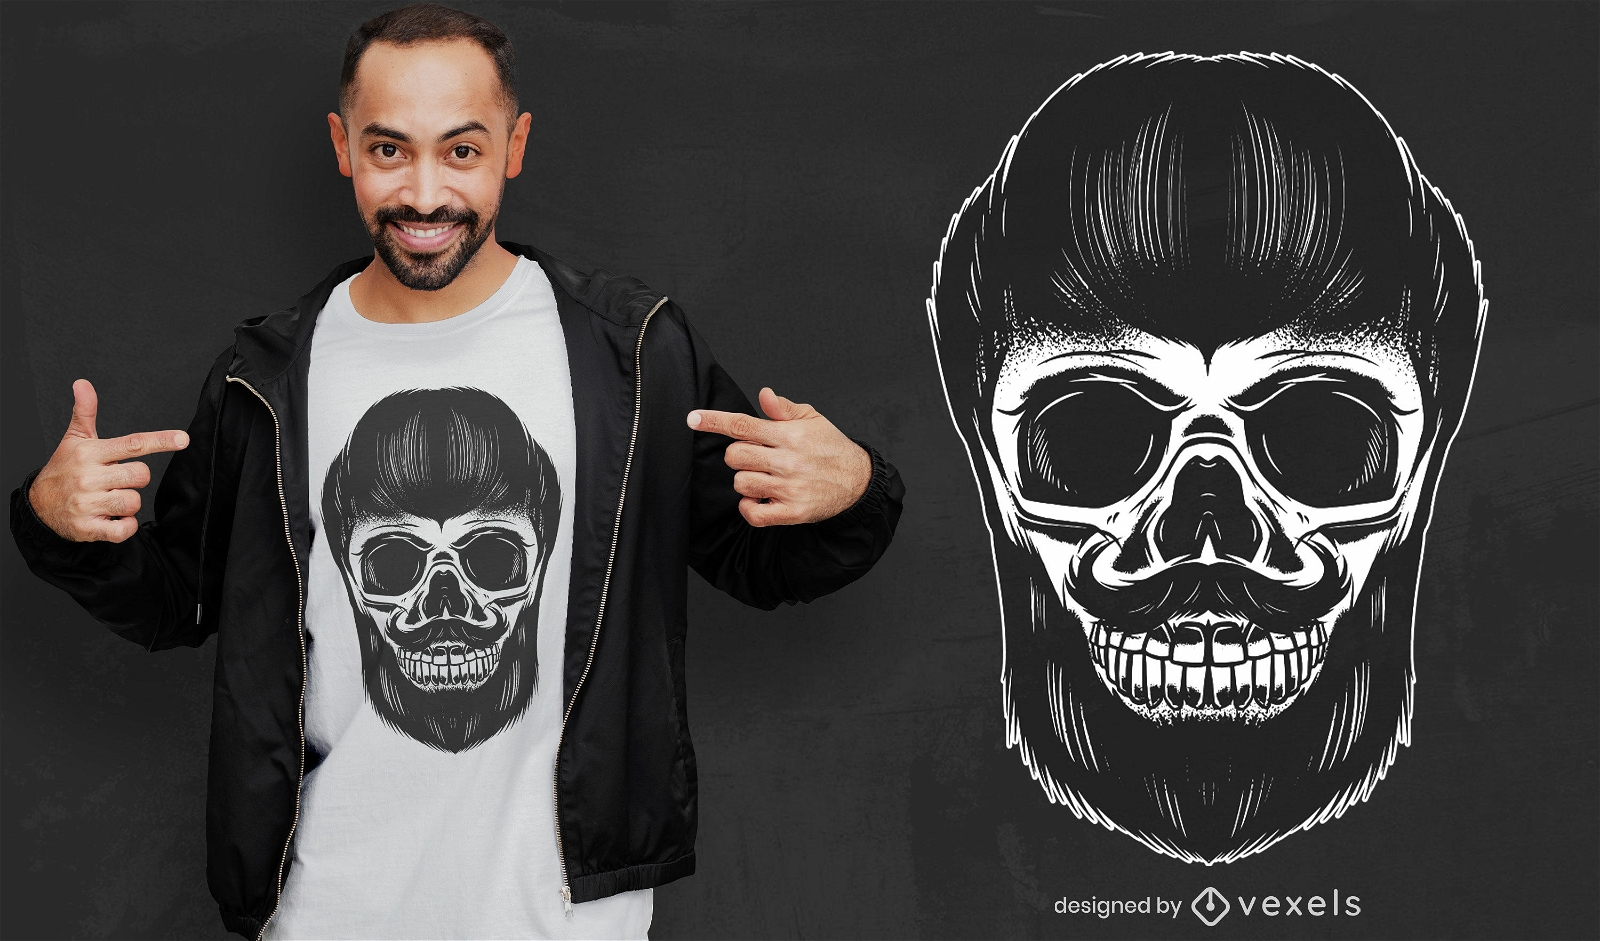 Barber skull t-shirt design